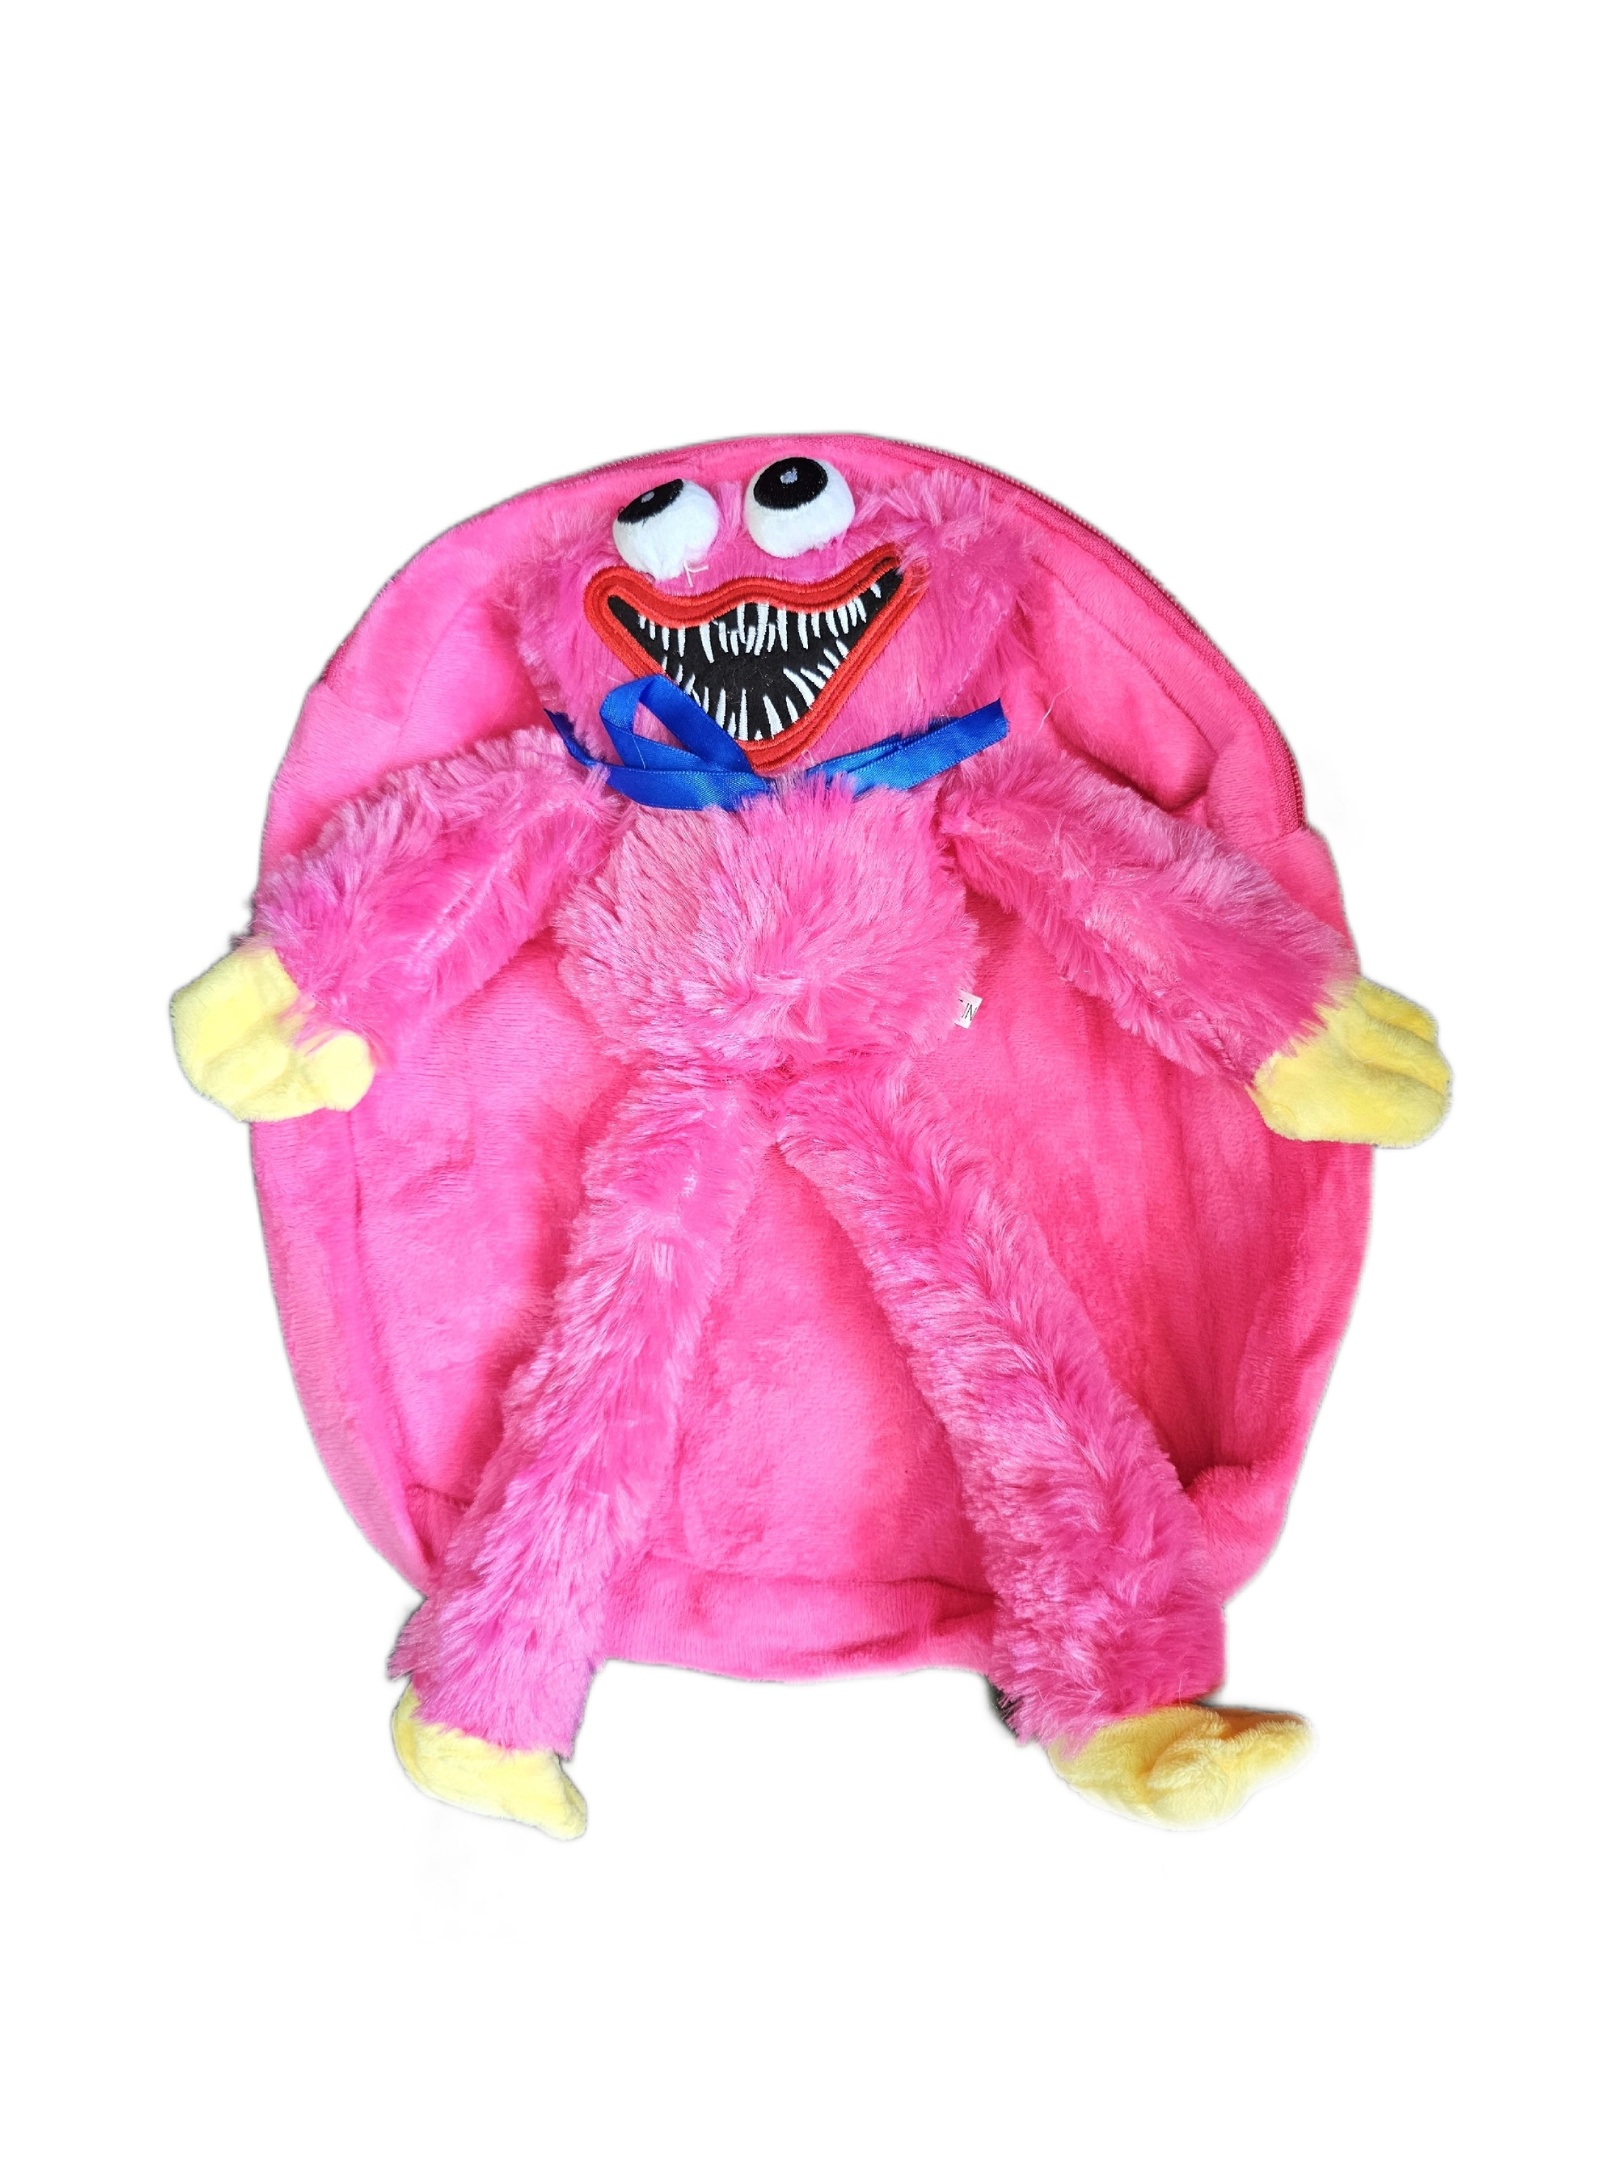 Рюкзак детский плюшевый с игрушкой Кисси Мисси Хаги Ваги, цвет розовый